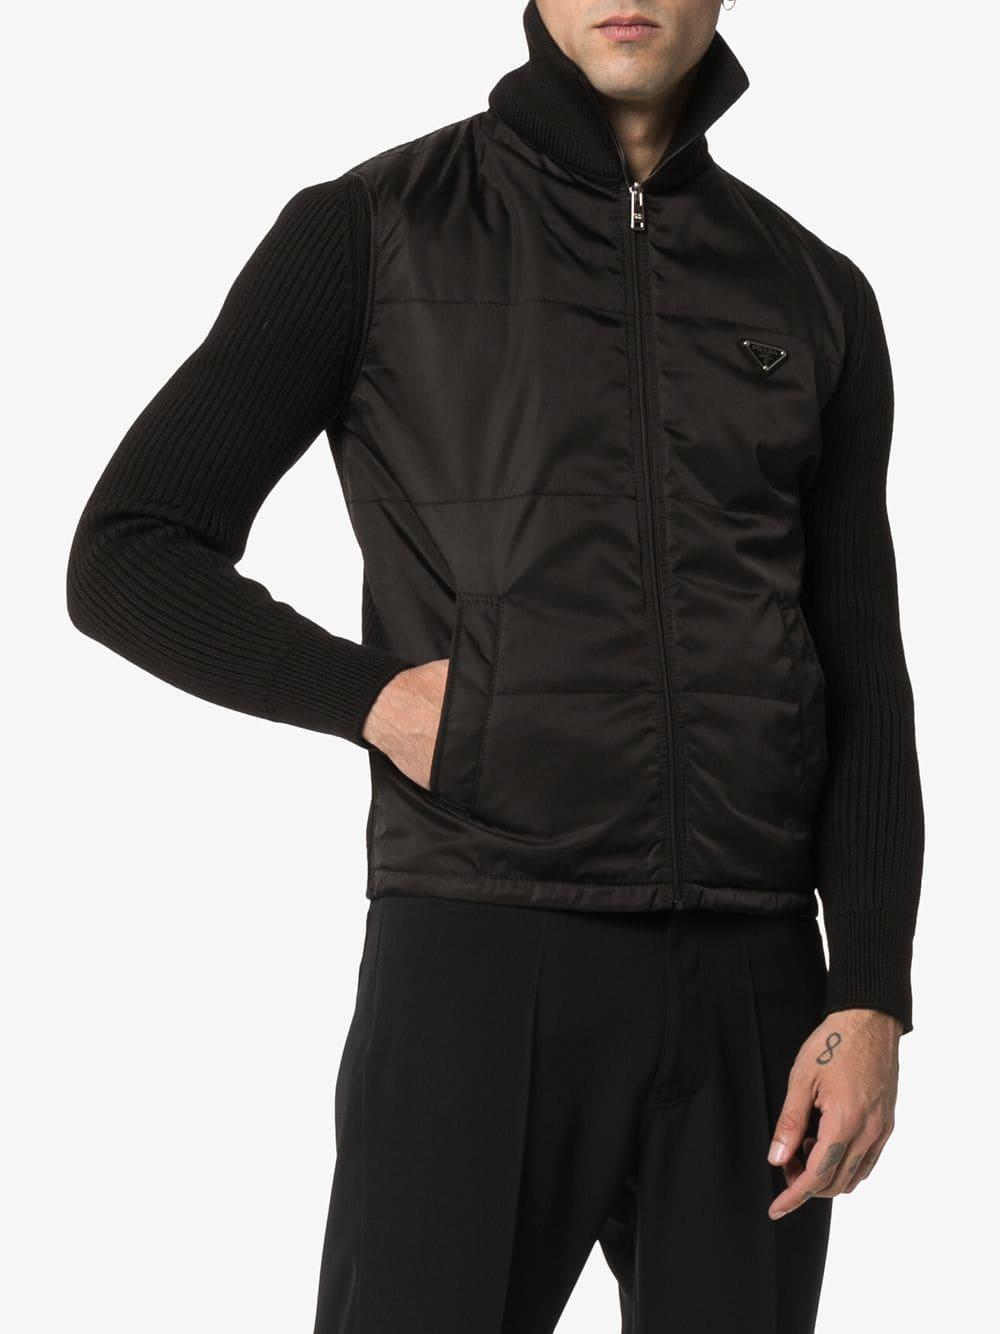 Prada Turtleneck Zip-up Cardigan in Black for Men - Lyst